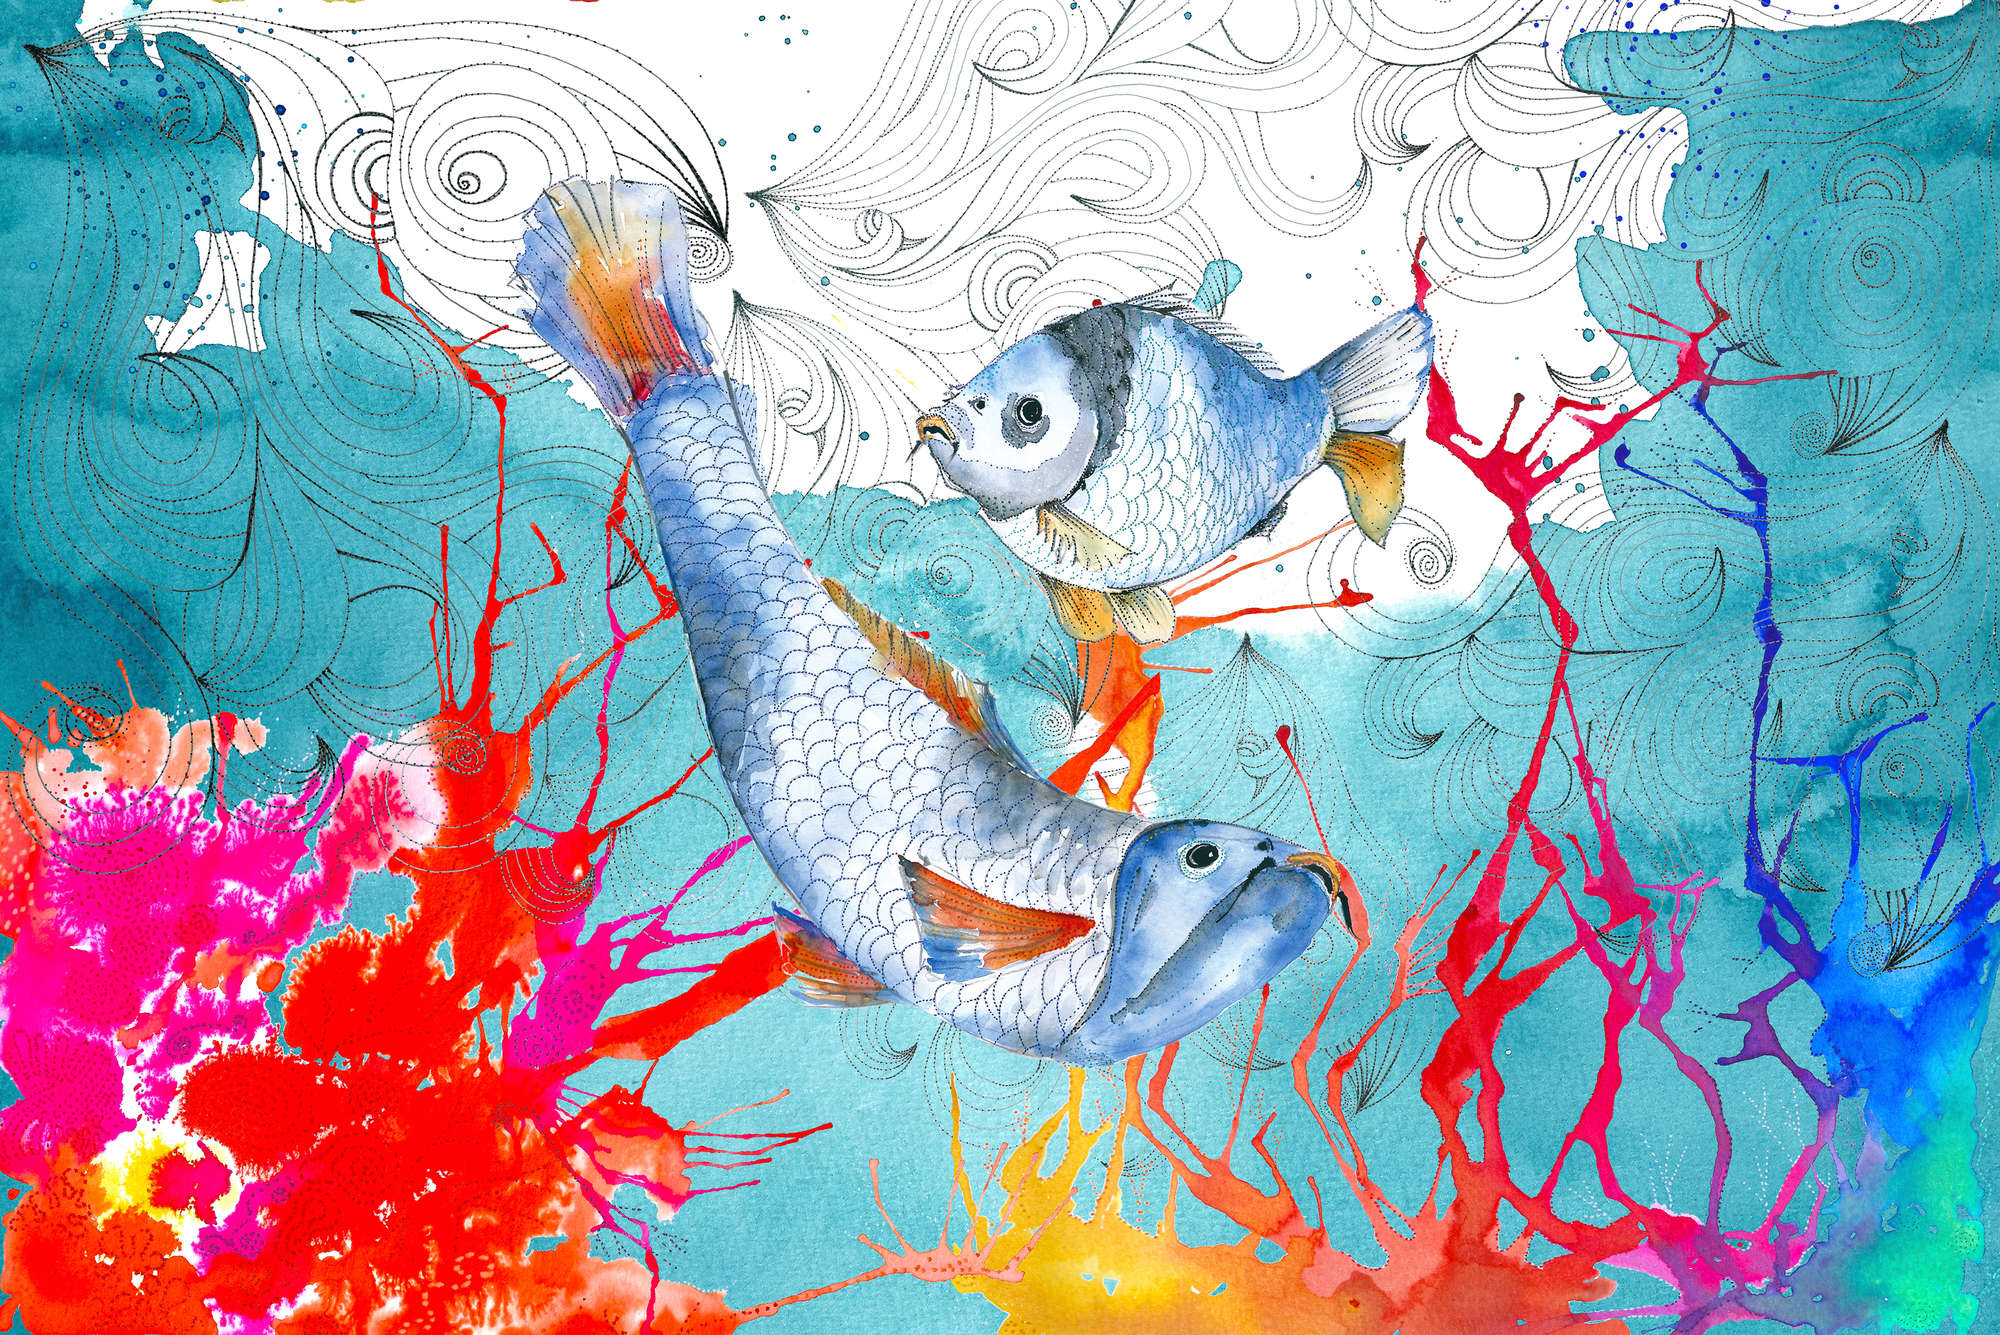             Papel pintado de acuarela con motivo de pez en azul y rosa sobre vellón liso de nácar
        